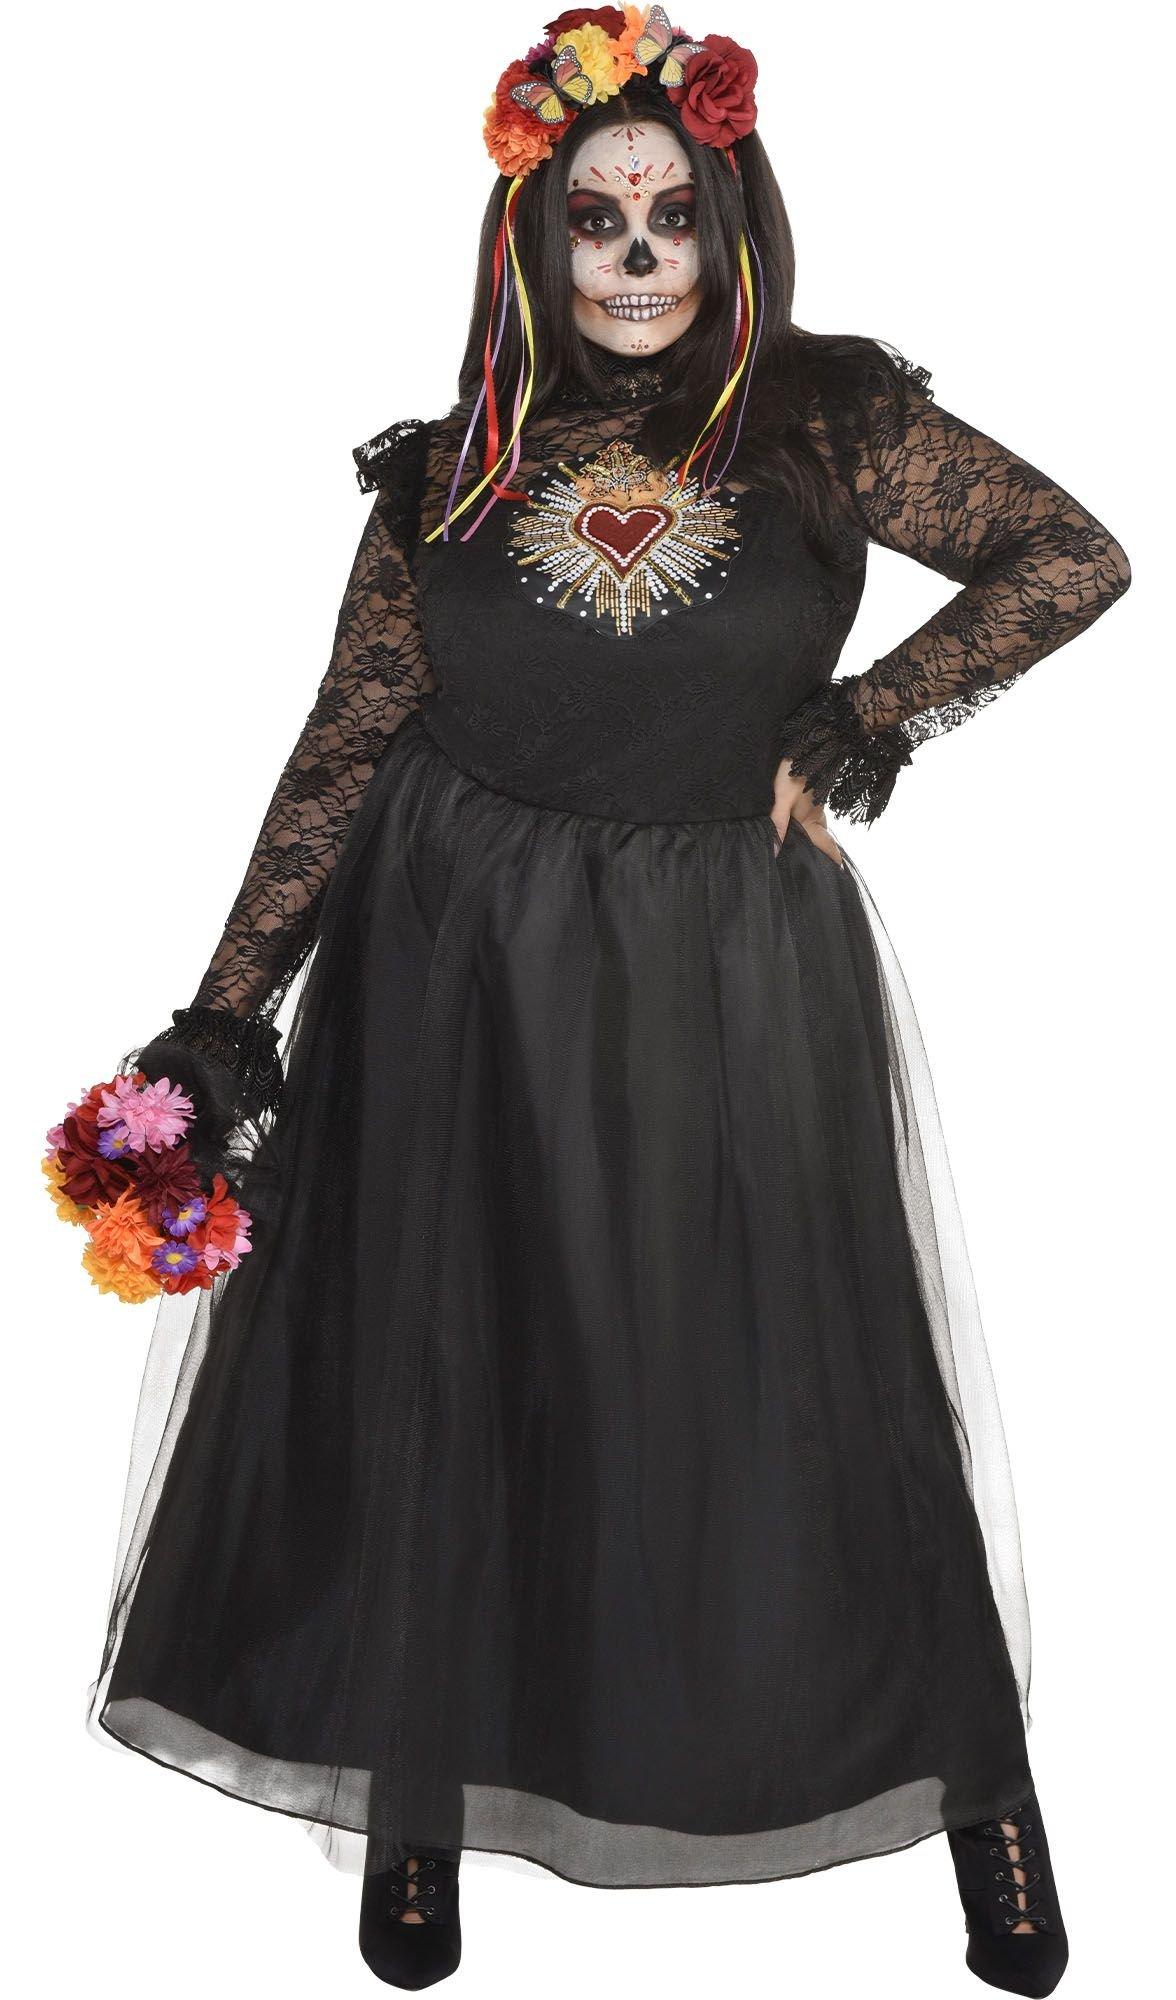 Pretty Sweet Dress, Black – Chic Soul